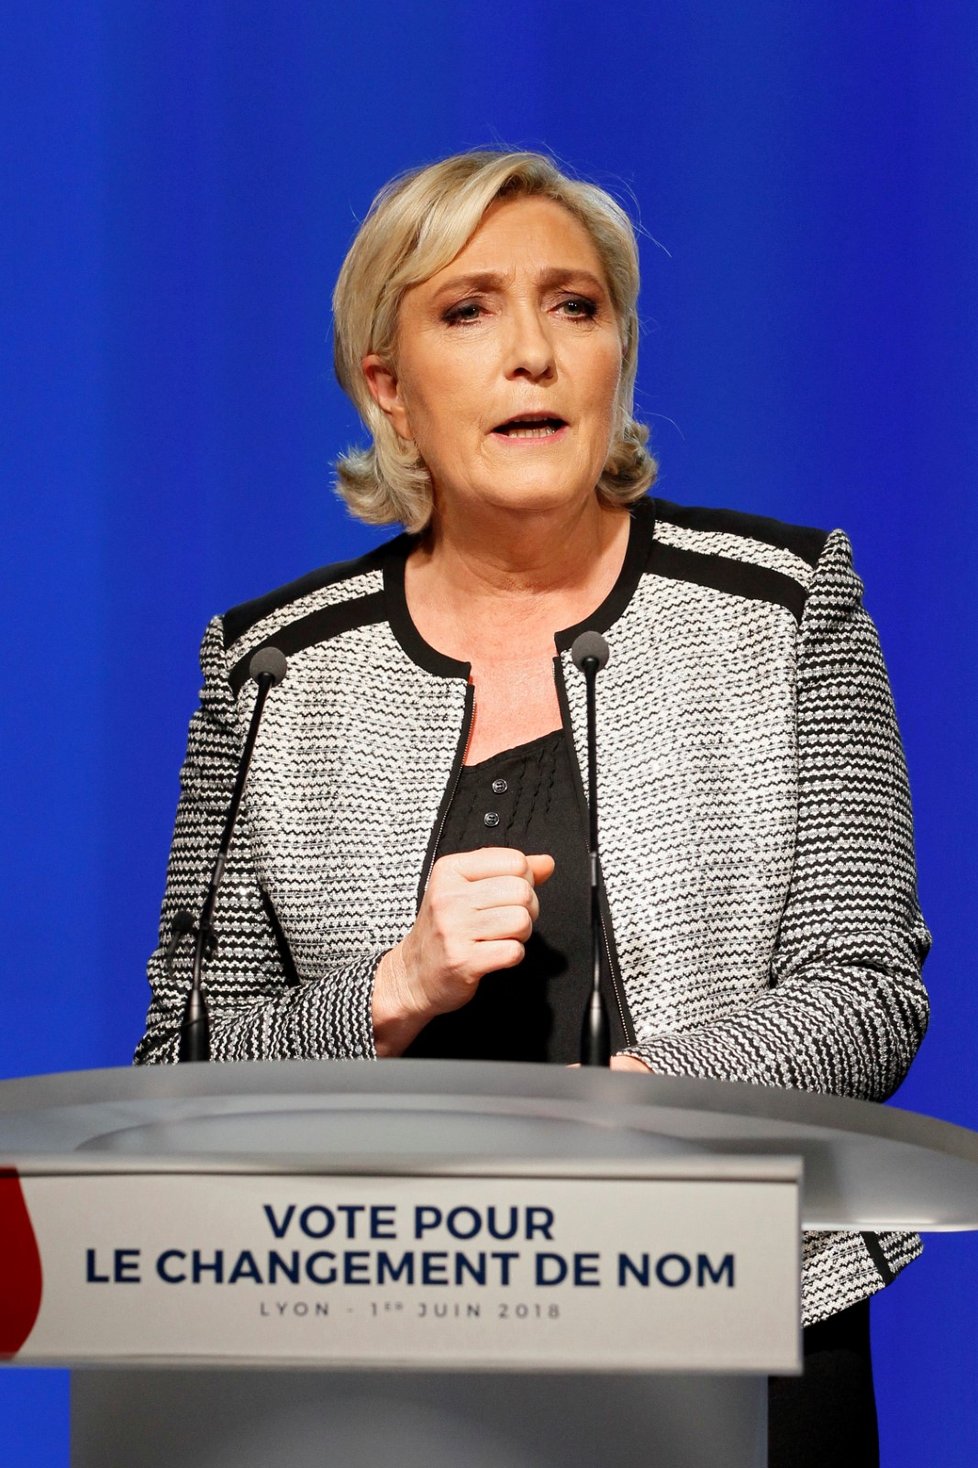 Marine Le Penová v roce 2017 prohrála francouzské prezidentské volby se současným prezidentem Emmanuelem Macronem. Ve druhém kole na svoji stranu získala jen 33,9 % voličů.